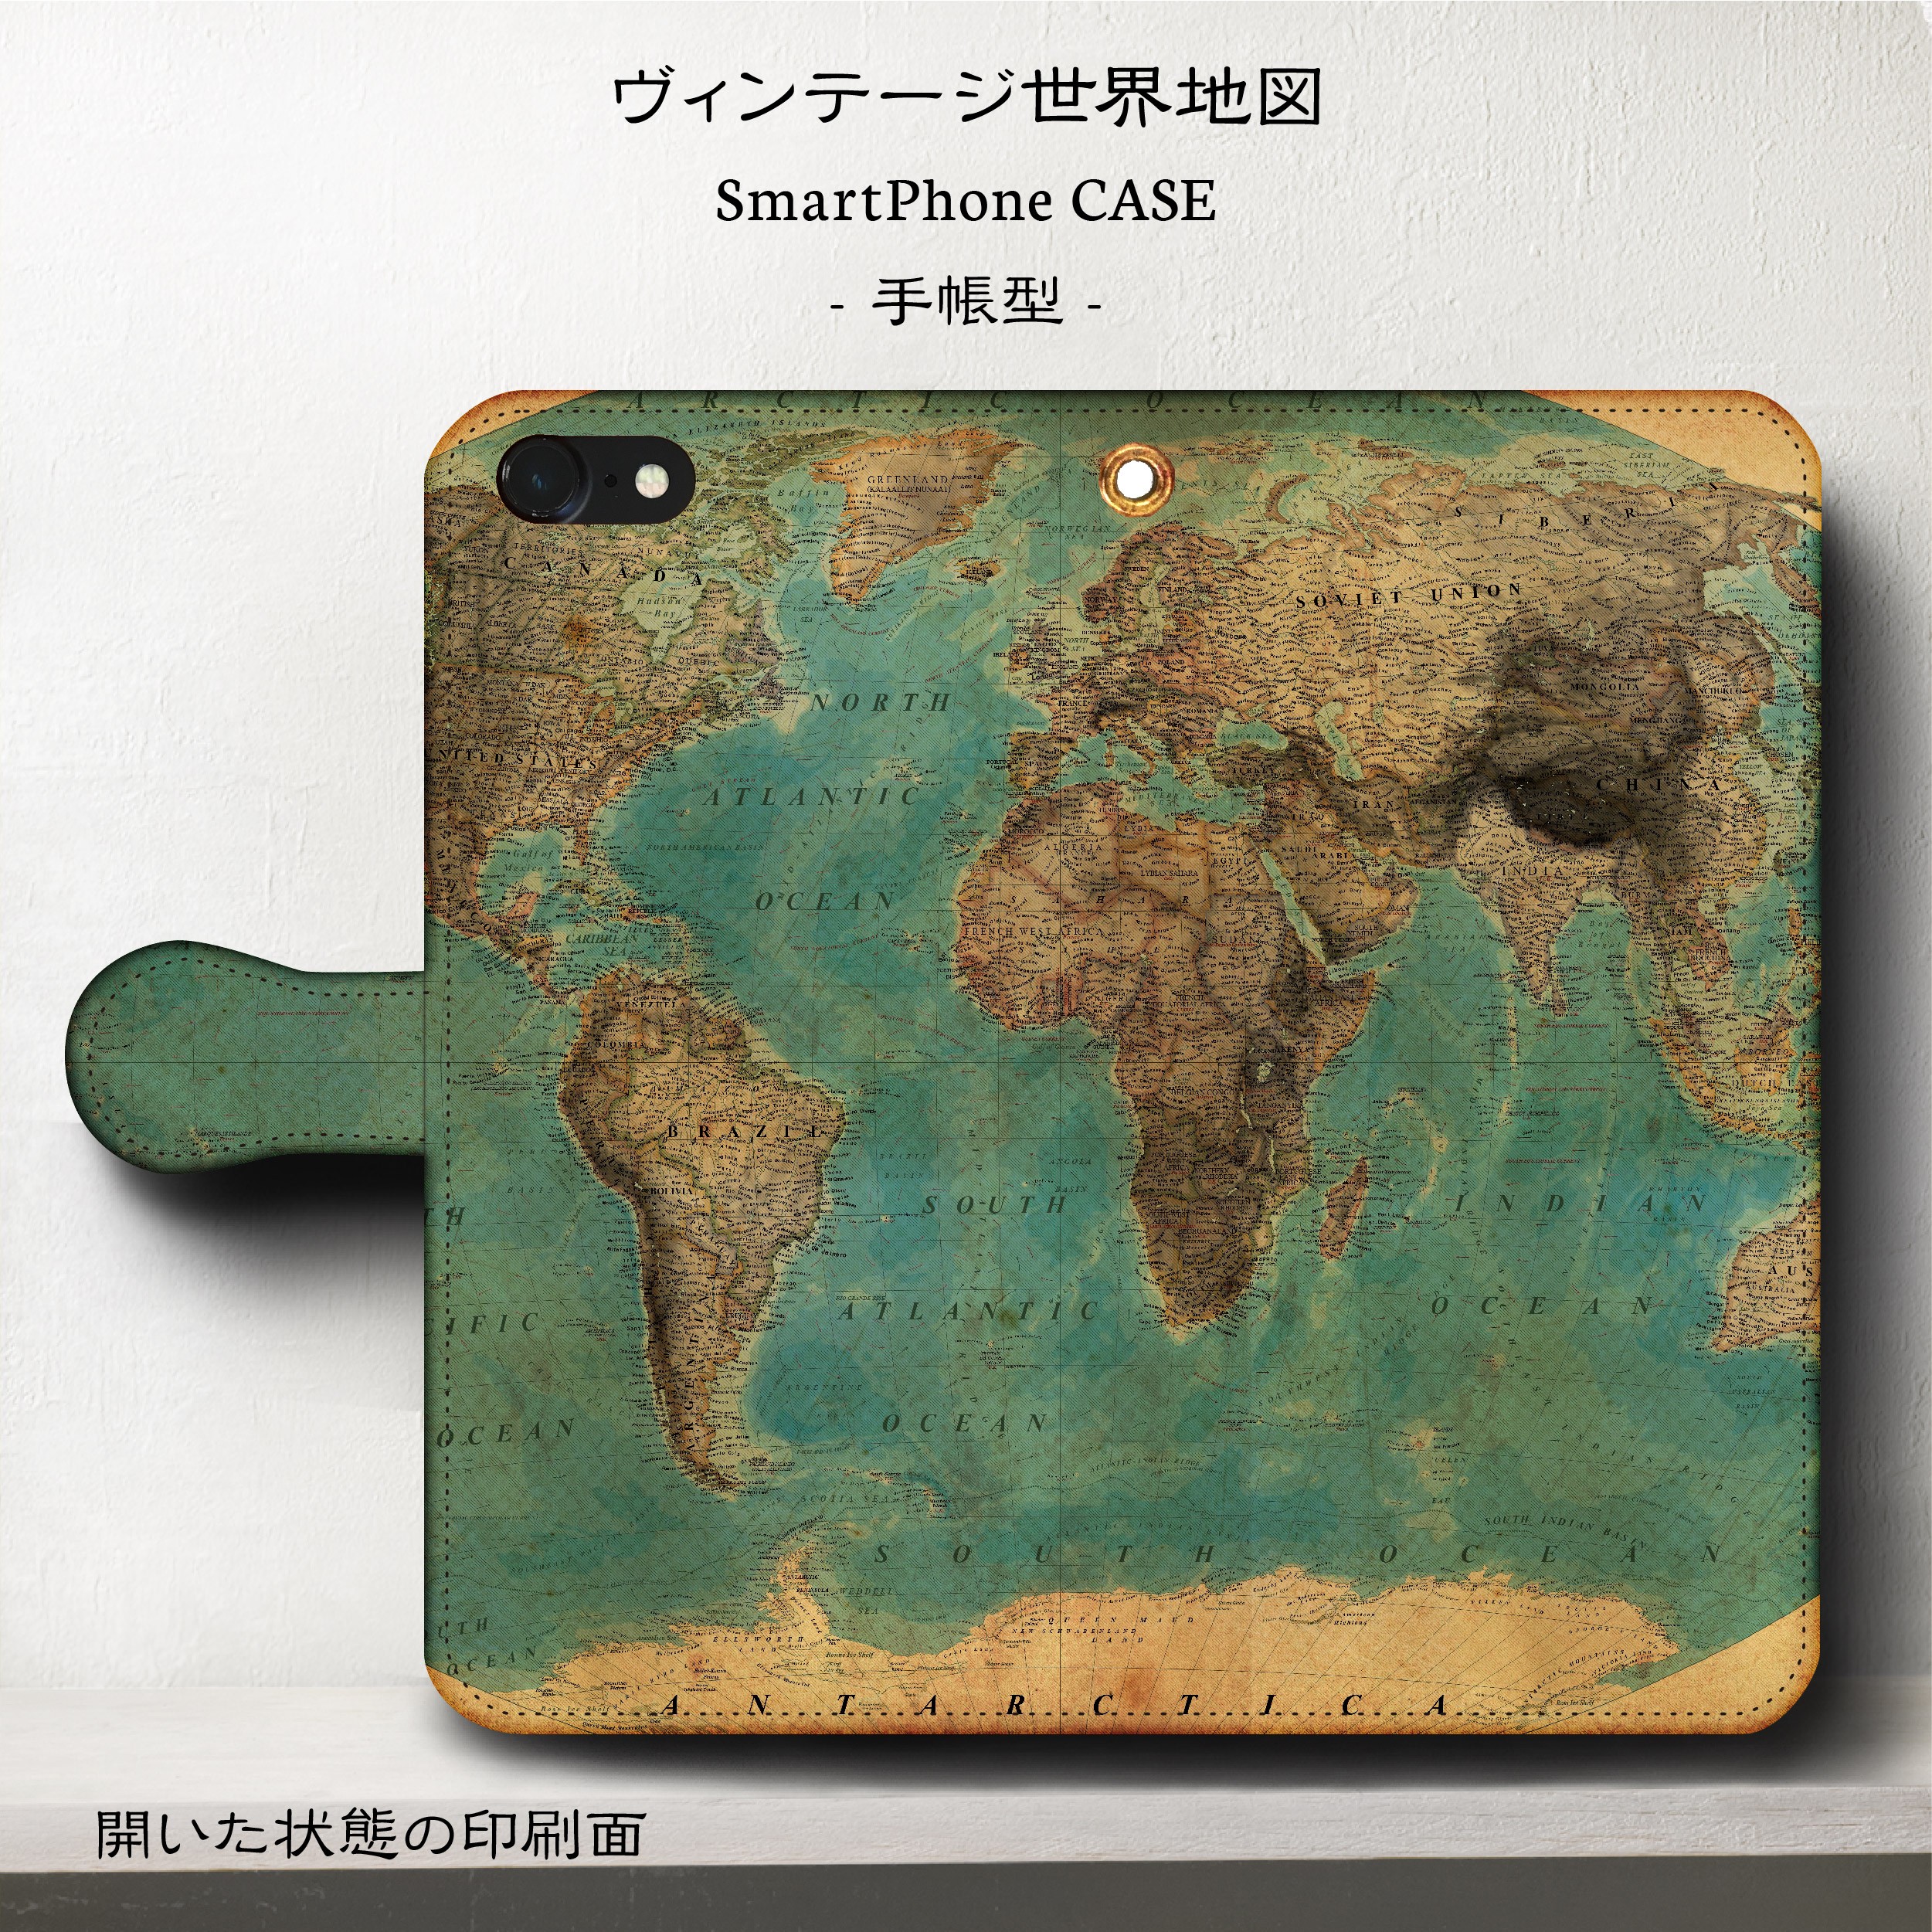 スマホケース ヴィンテージ世界地図 手帳型 Iphone Galaxy S9 S8 全機種 対応 Iichi ハンドメイド クラフト作品 手仕事品の通販